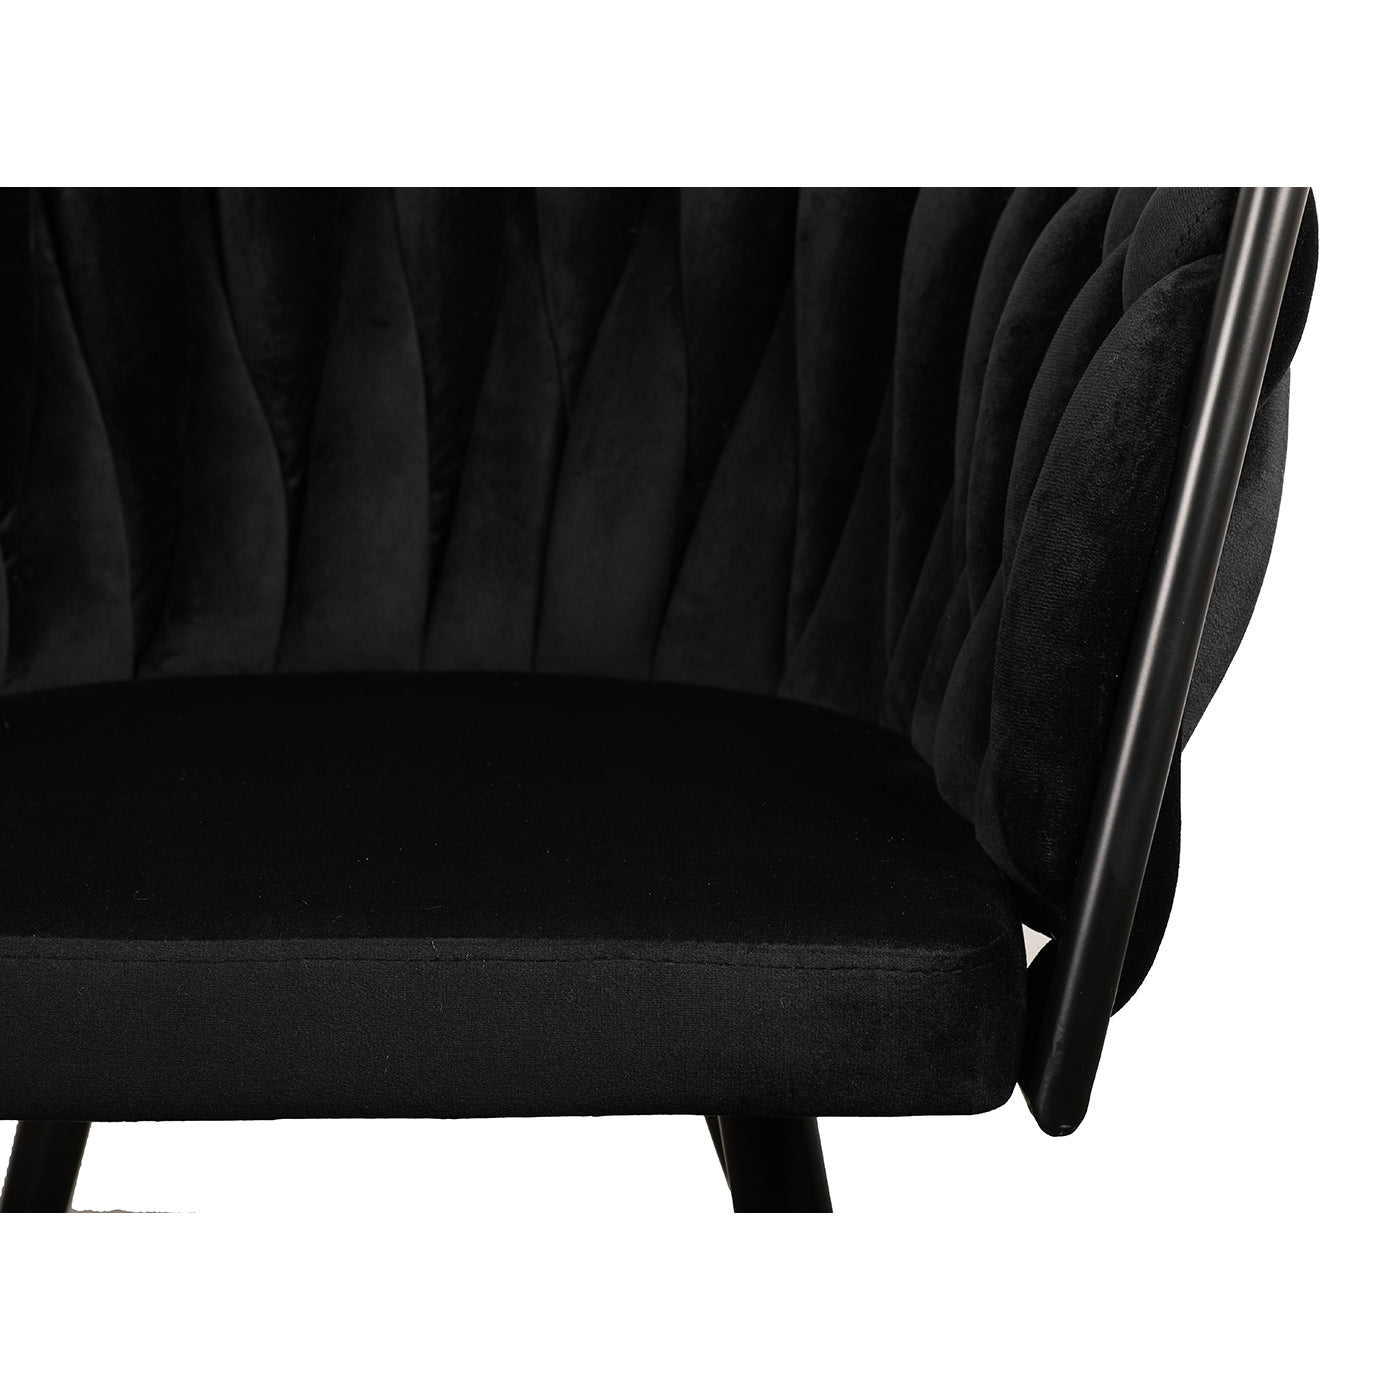 Eettafel stoel met armleuning Charles in zwart kleur van Thimalo detailfoto fluweel stof